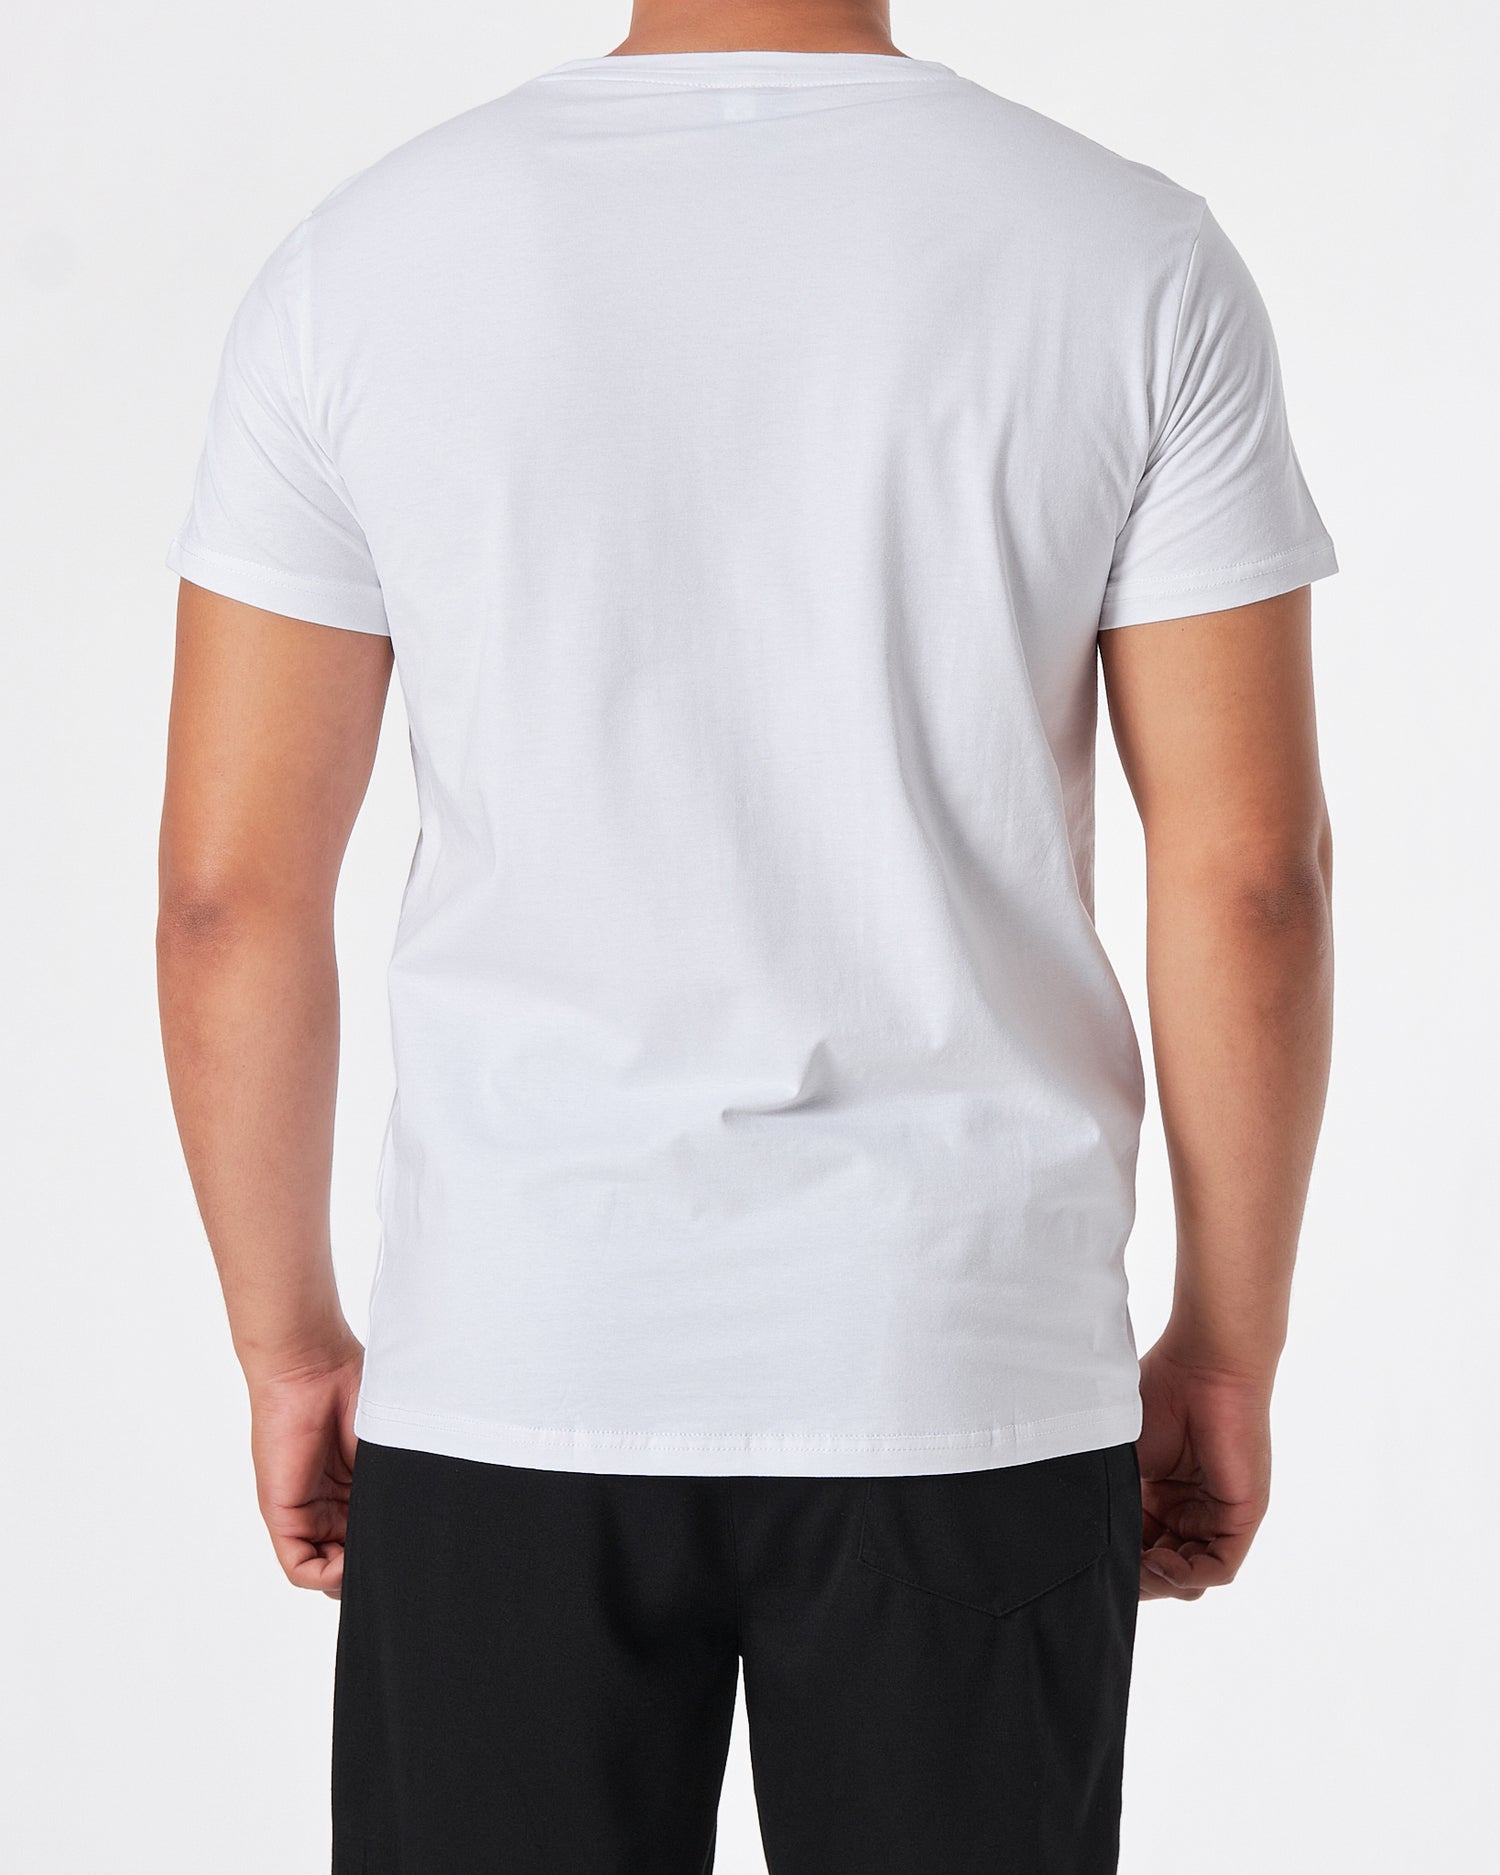 ADI Logo Vertical Printed Men White T-Shirt 15.50